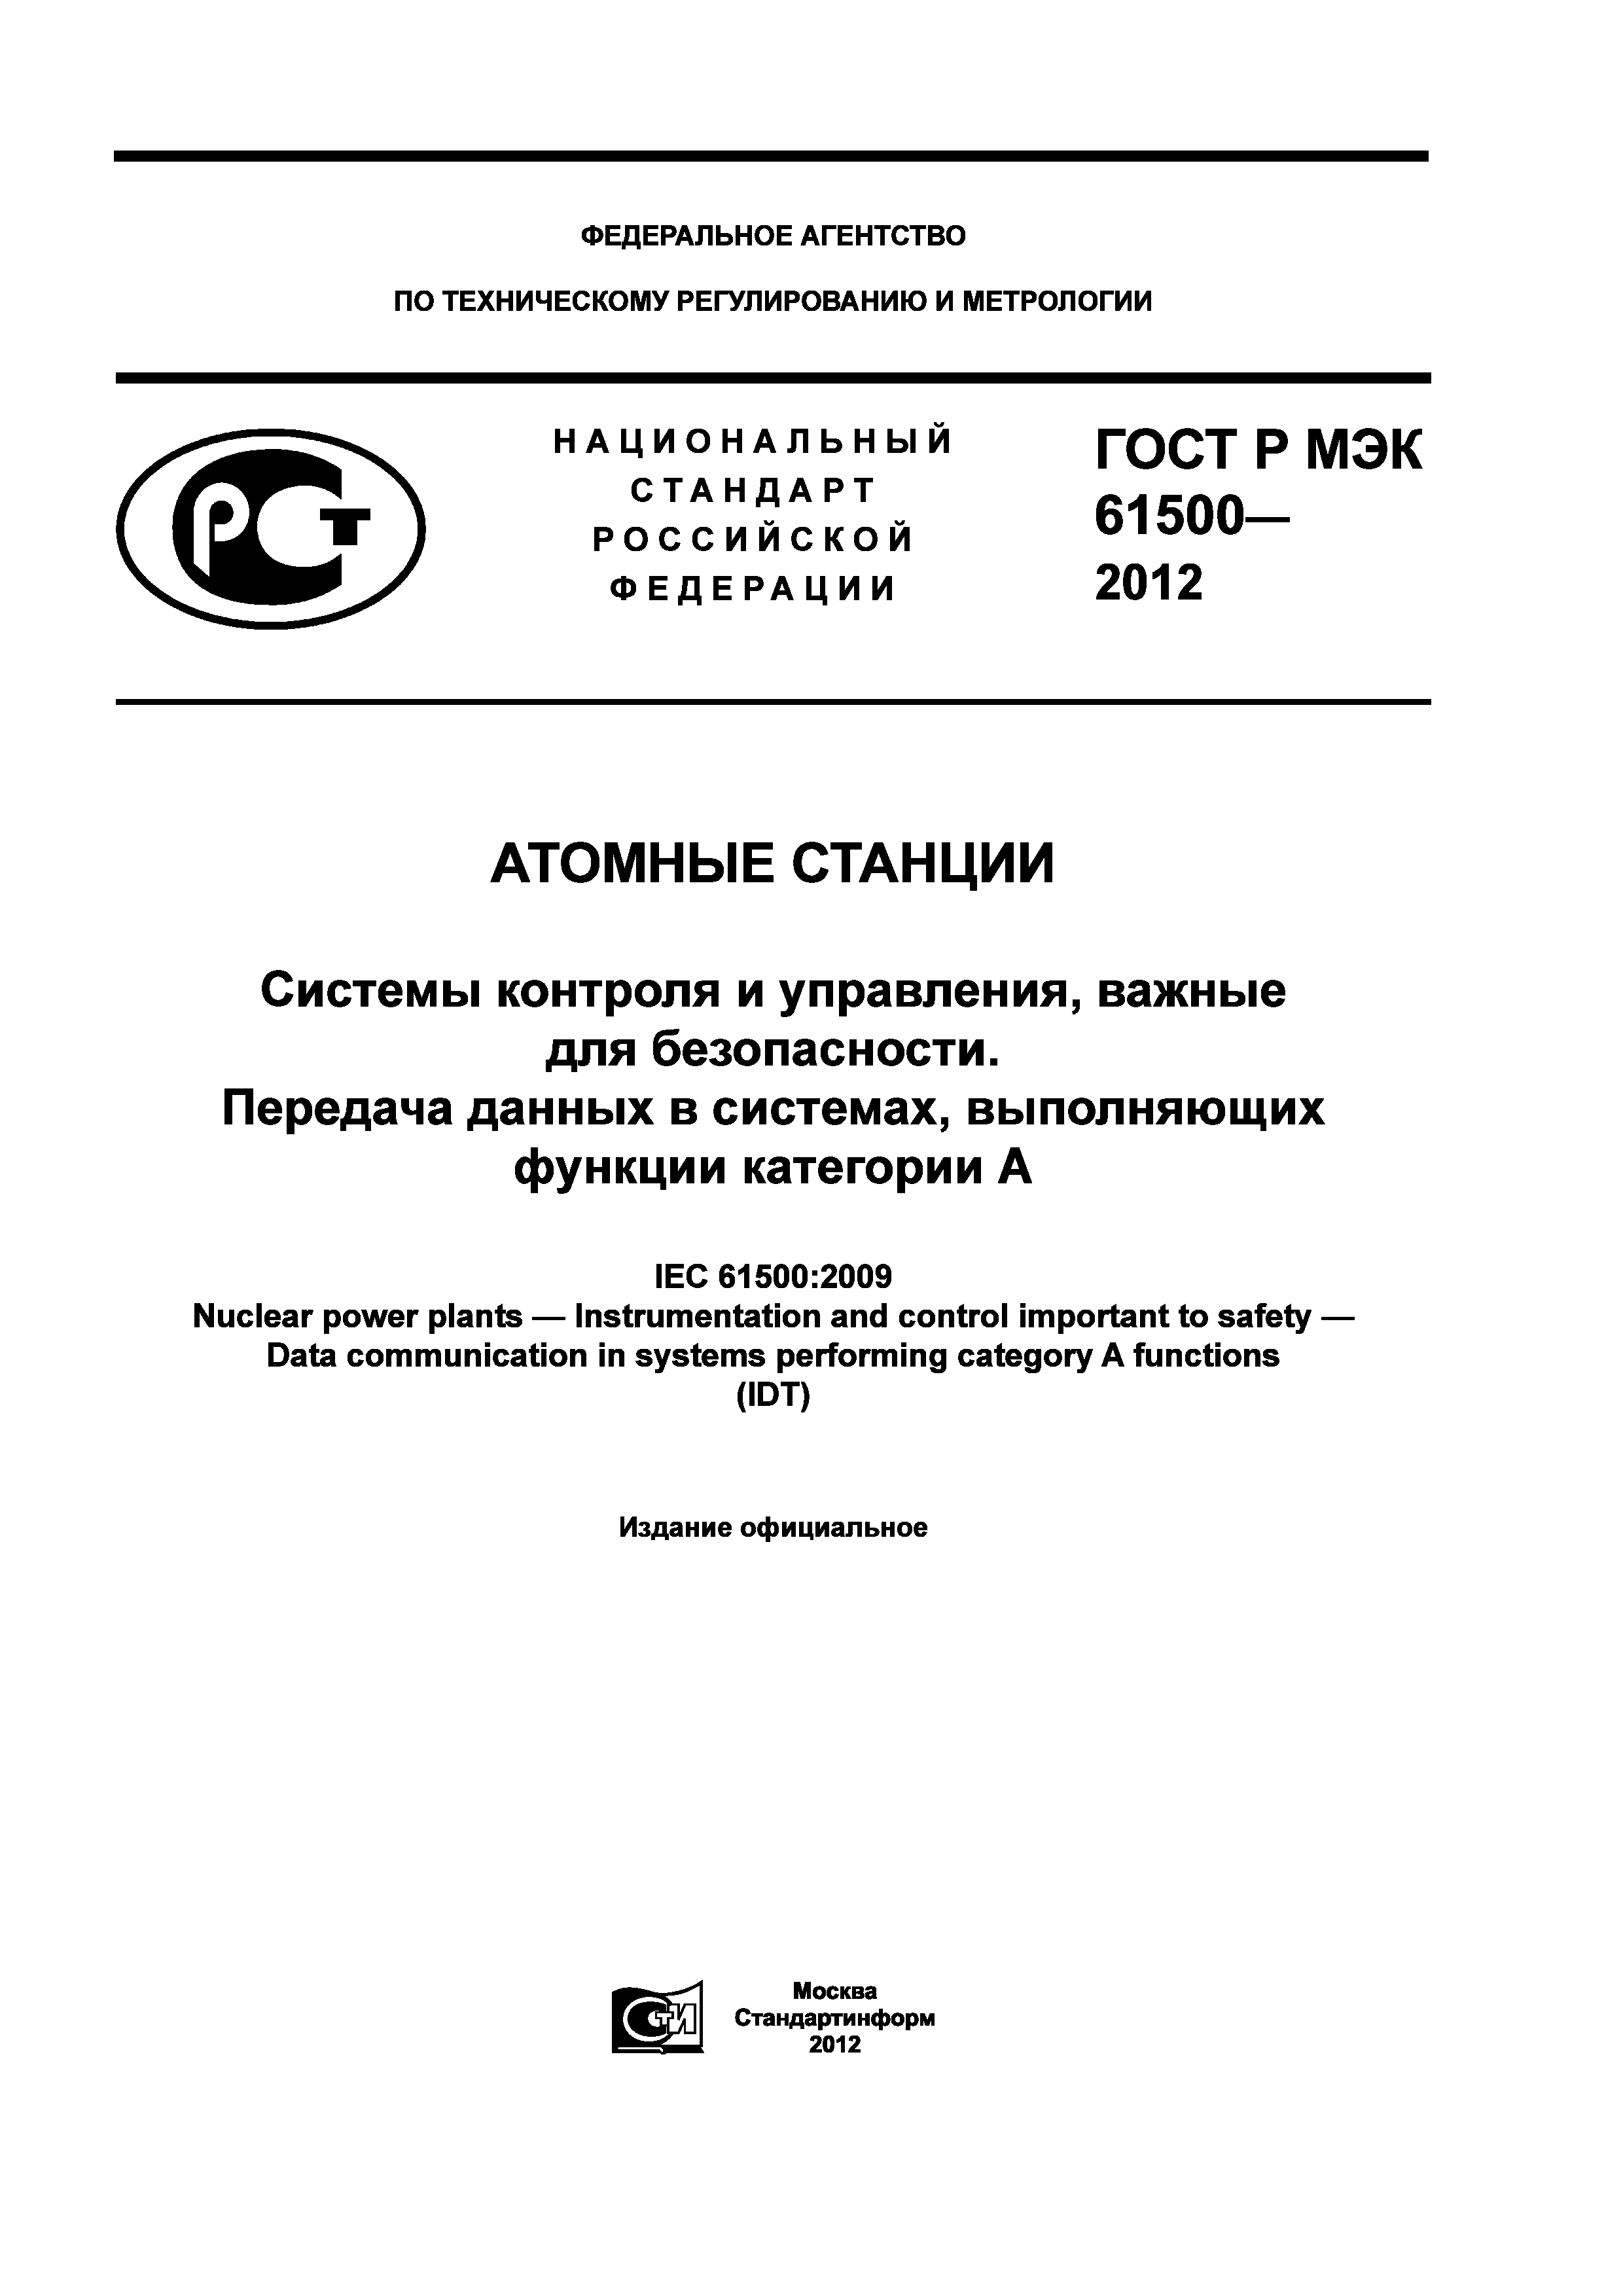 ГОСТ Р МЭК 61500-2012